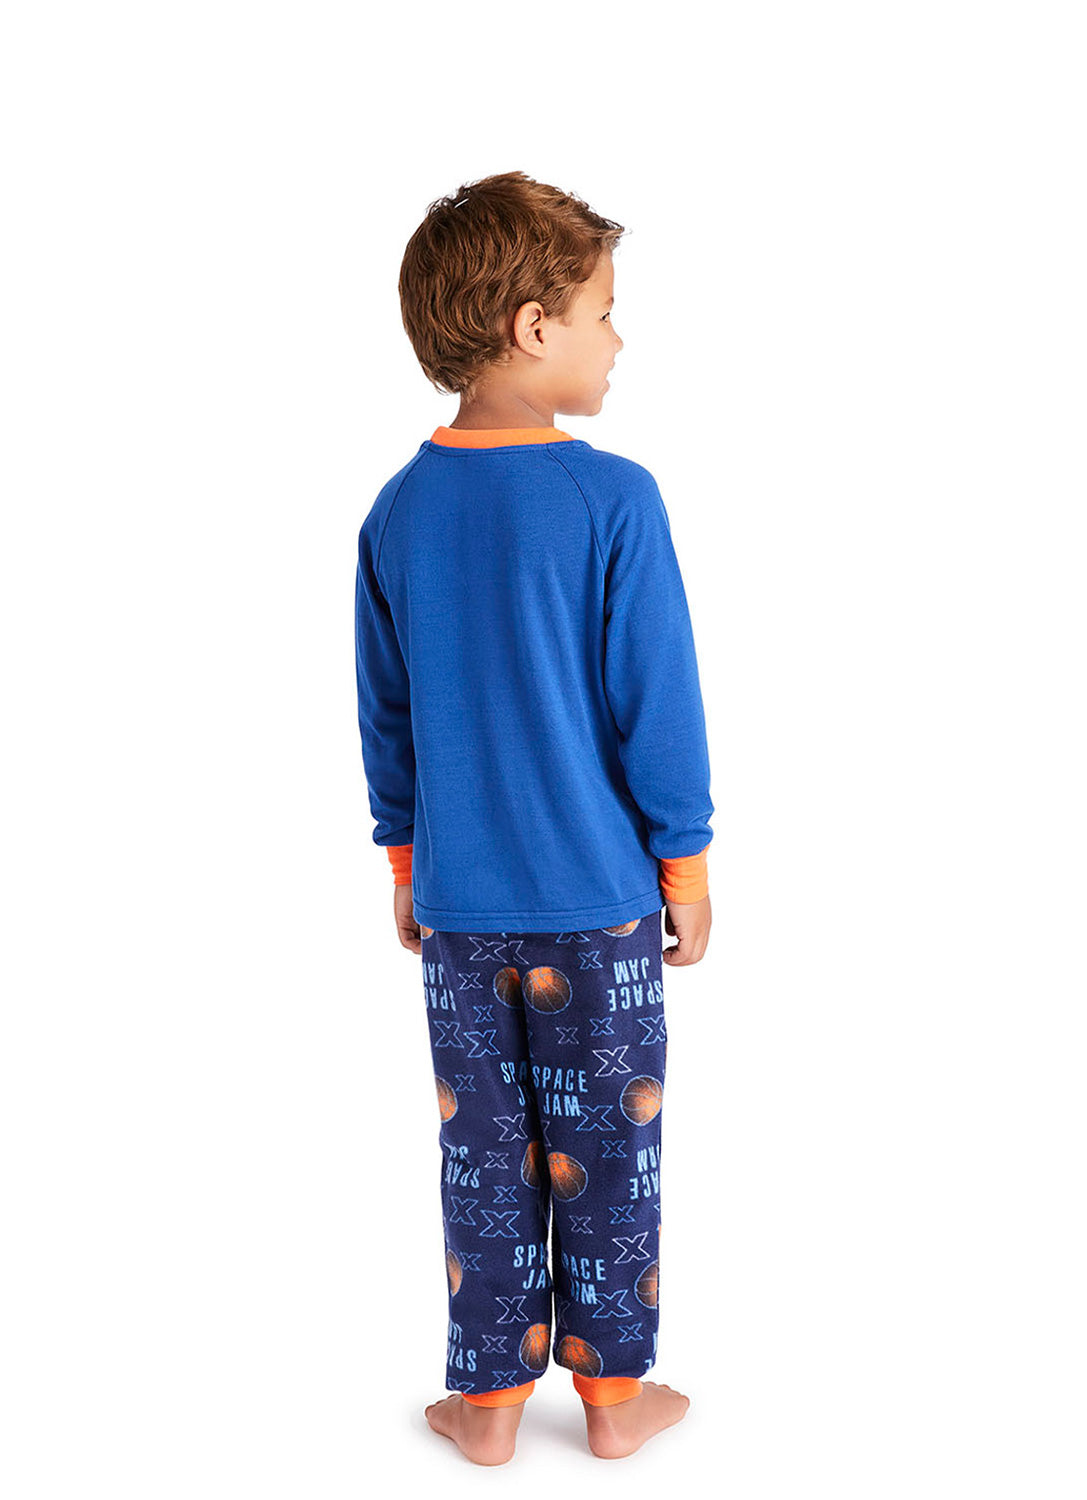 Back view Boy wearing Space Jam 2 Pajama Set (Blue)